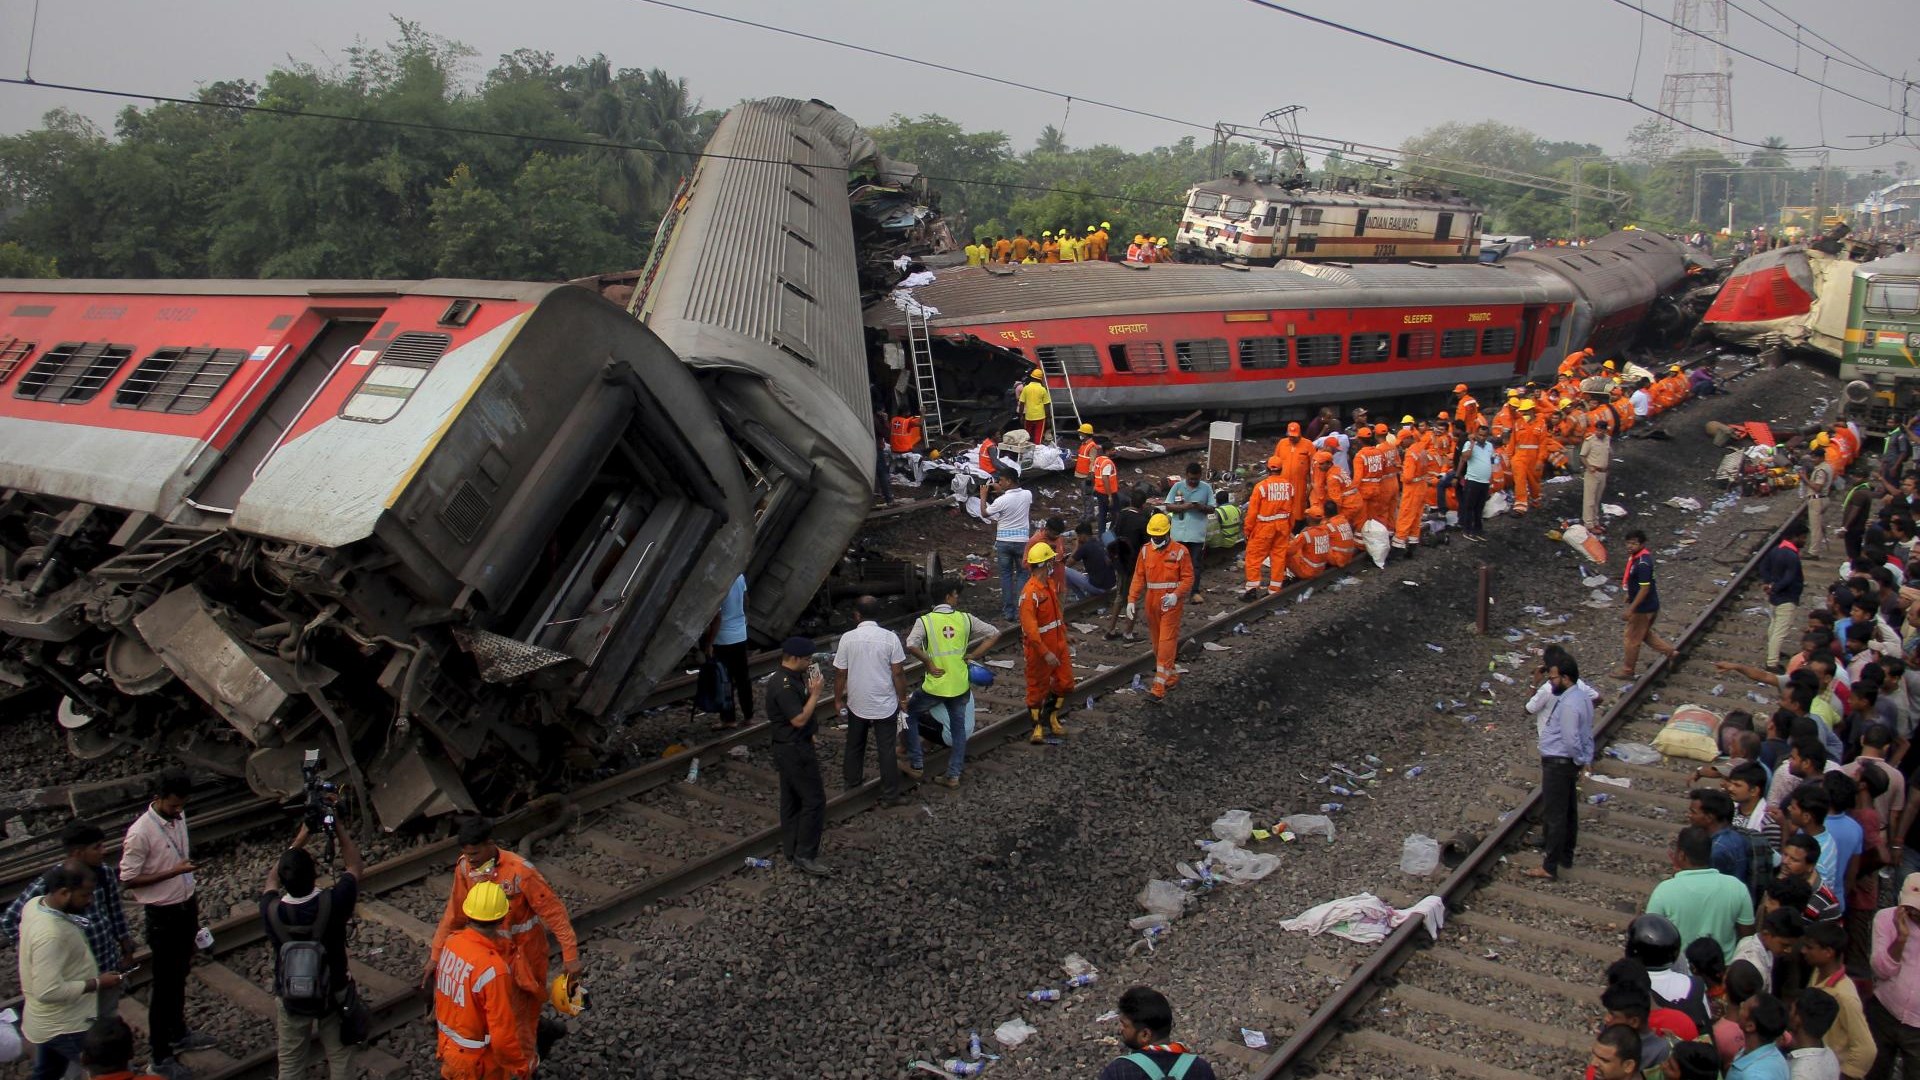 #foto Au moins 261 personnes sont mortes dans un grave accident de train en Inde